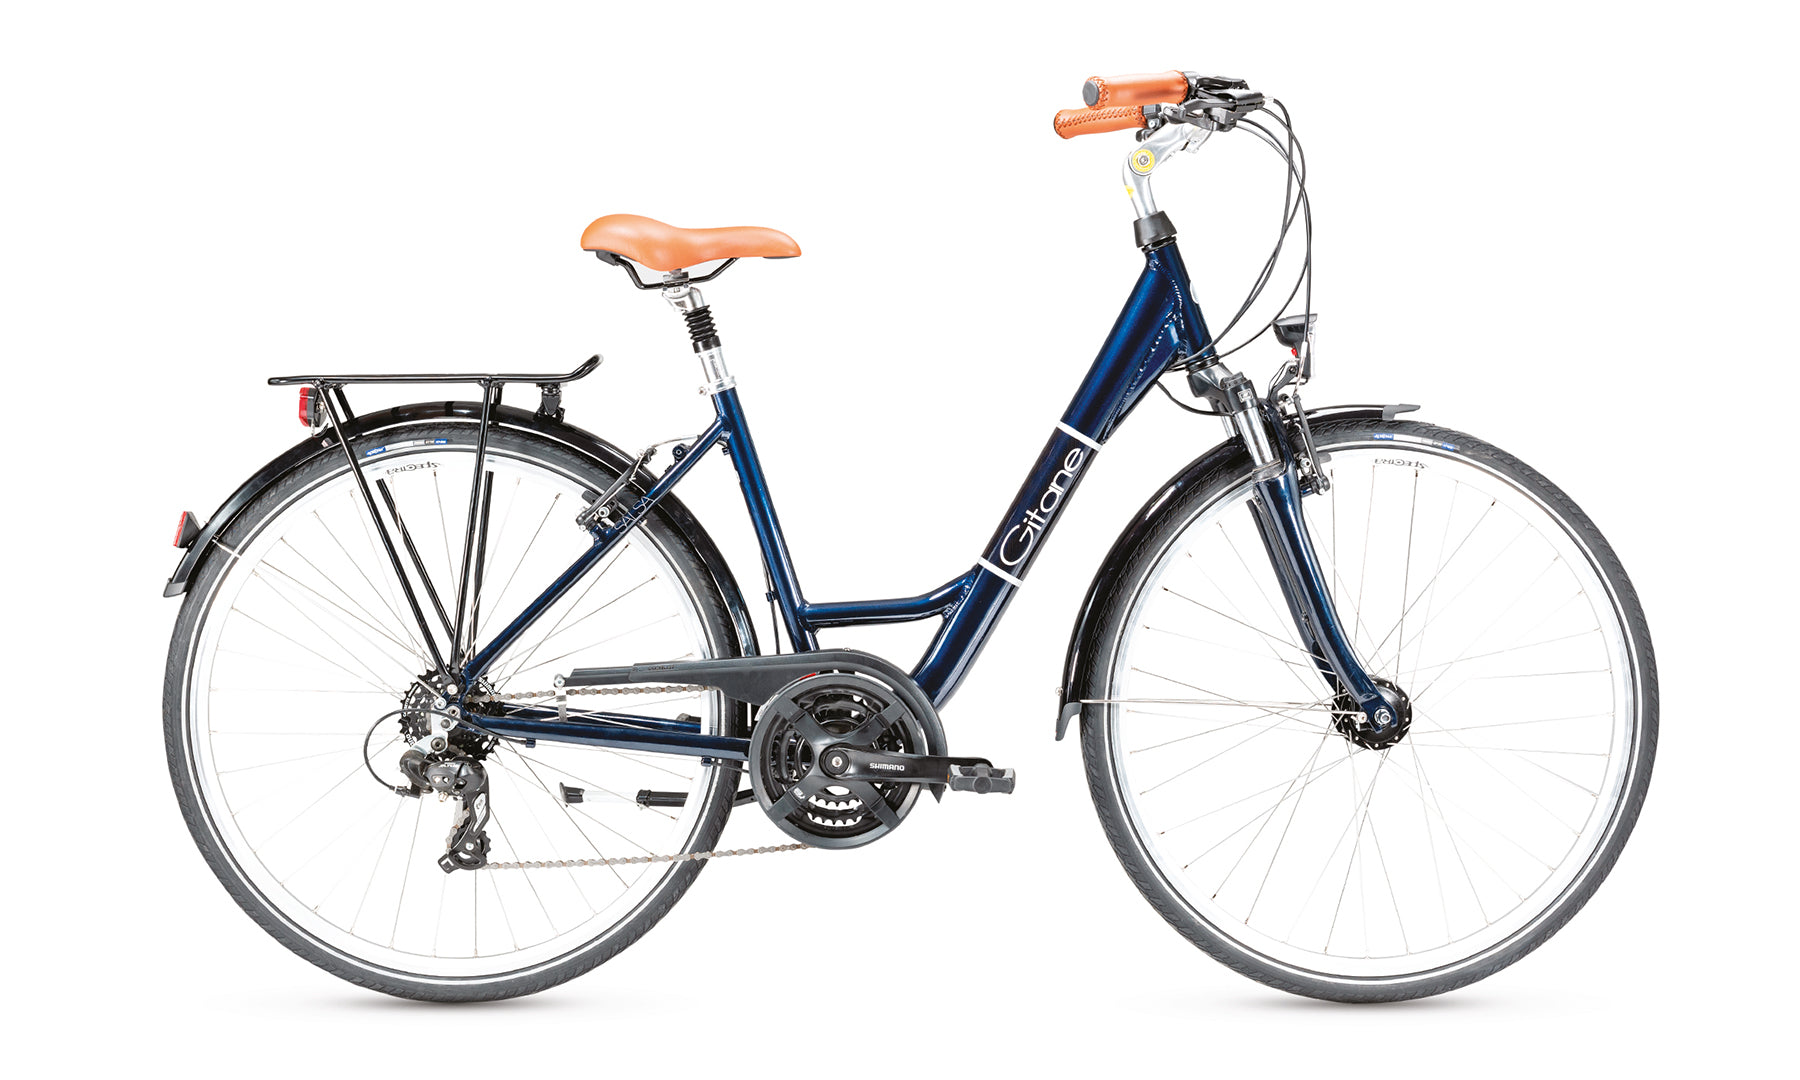 Gitane propose d’excellents modèles de vélo électrique français, comme ce Salsa 21’’